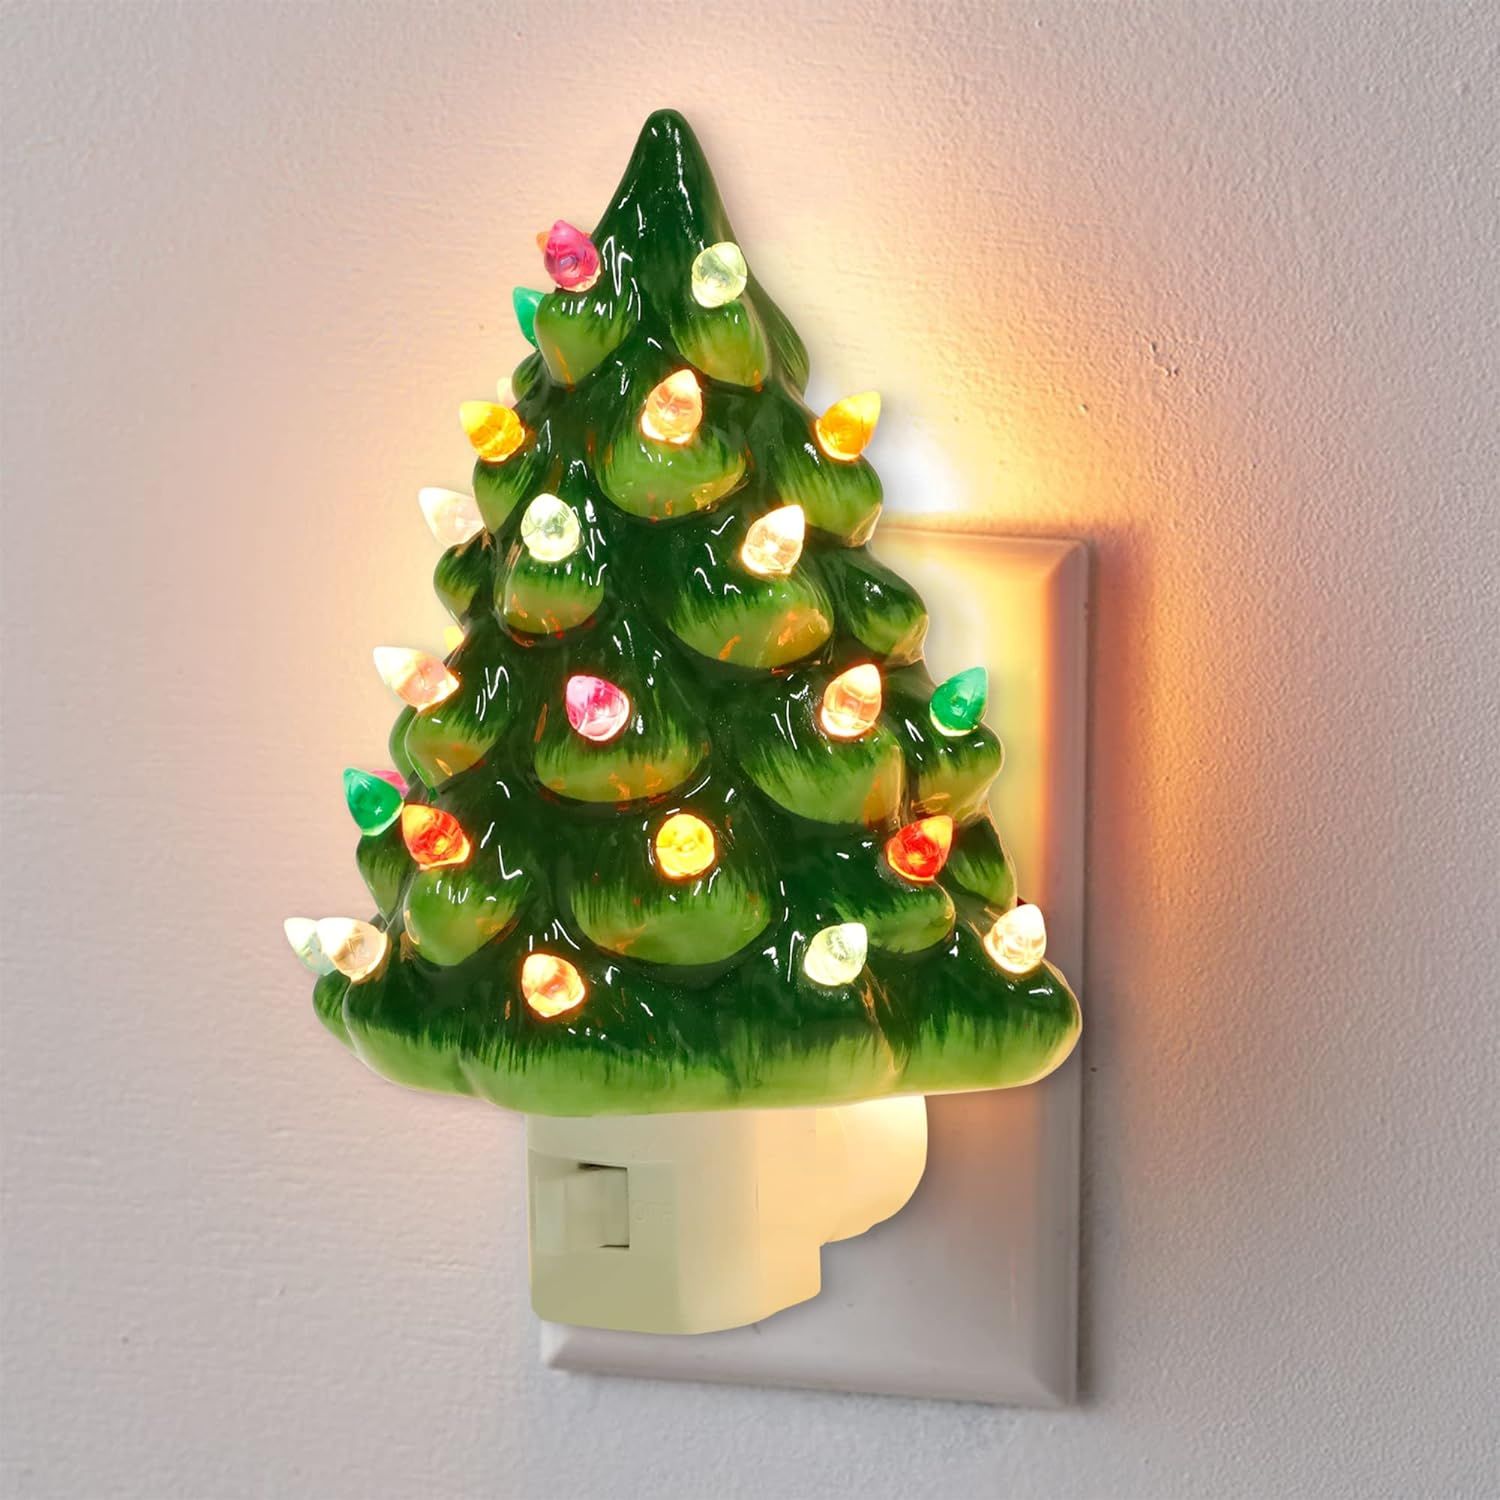 Hausse Christmas Ceramic Tree Night Light, Decorative Retro Christmas Tree Nightlight with Lamp, ... | Amazon (US)